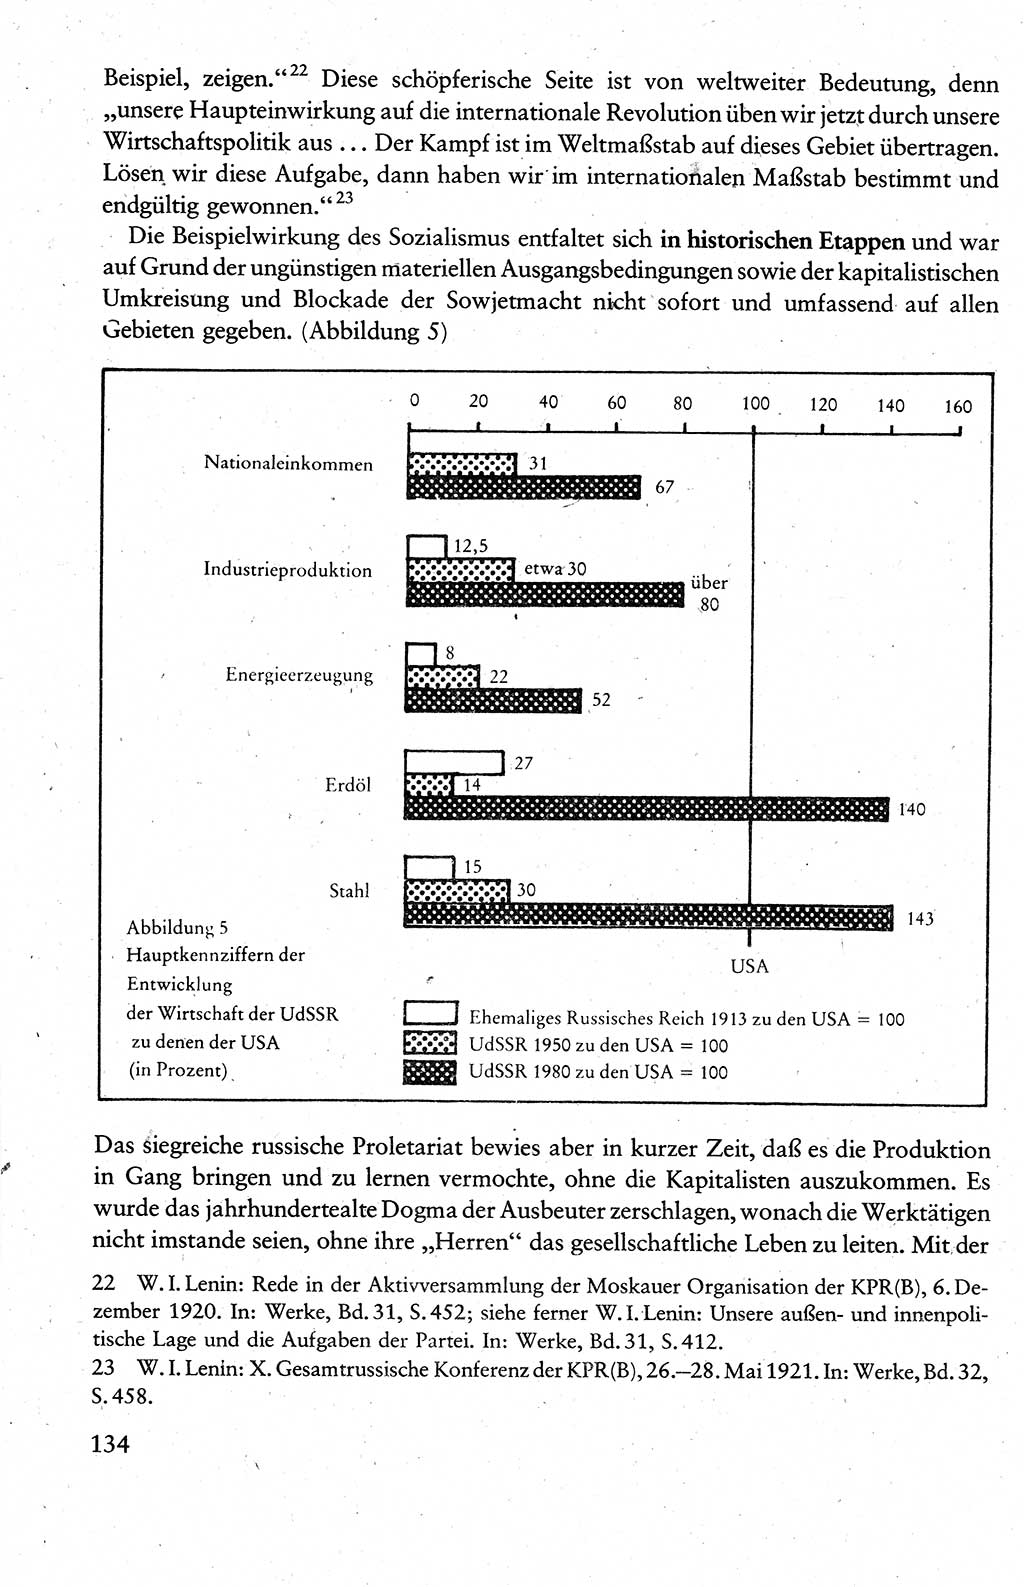 Wissenschaftlicher Kommunismus [Deutsche Demokratische Republik (DDR)], Lehrbuch für das marxistisch-leninistische Grundlagenstudium 1983, Seite 134 (Wiss. Komm. DDR Lb. 1983, S. 134)